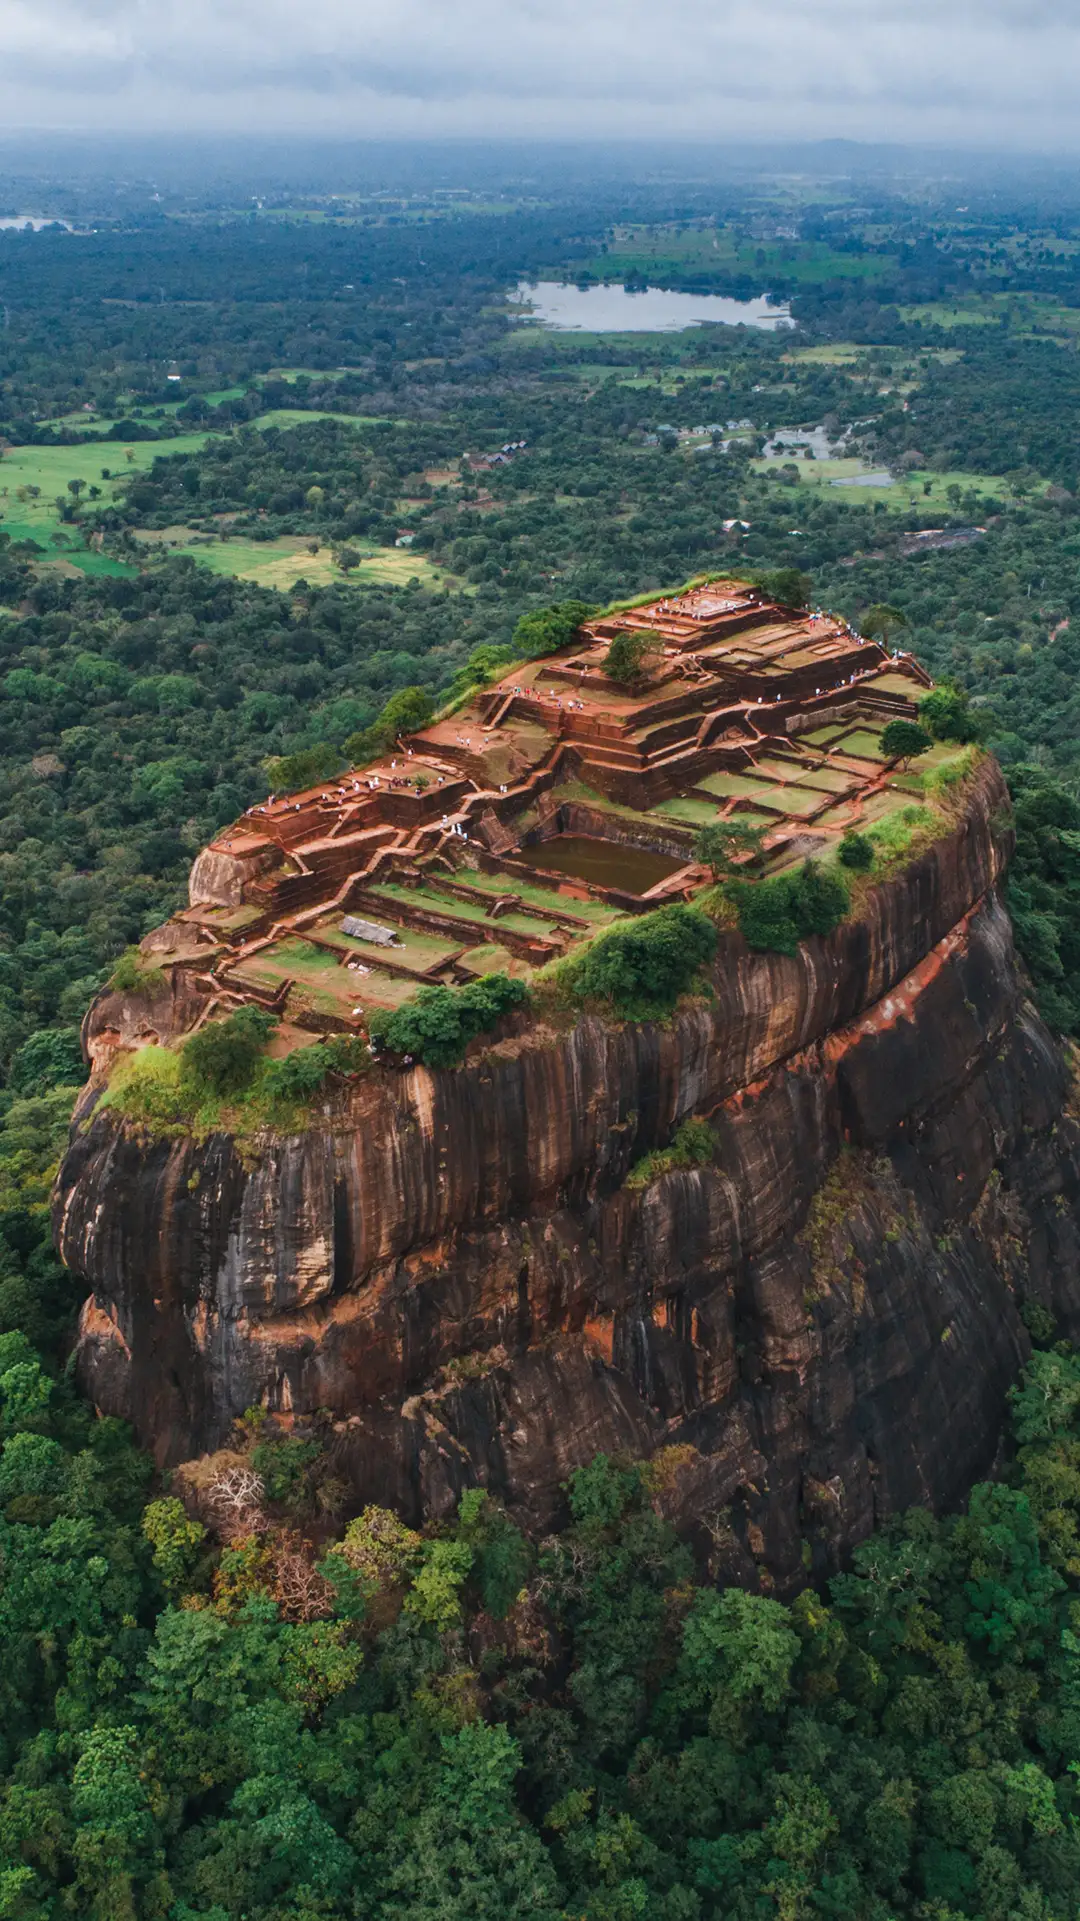 The historical Sigiriya lion rock fortress in Sri Lanka.